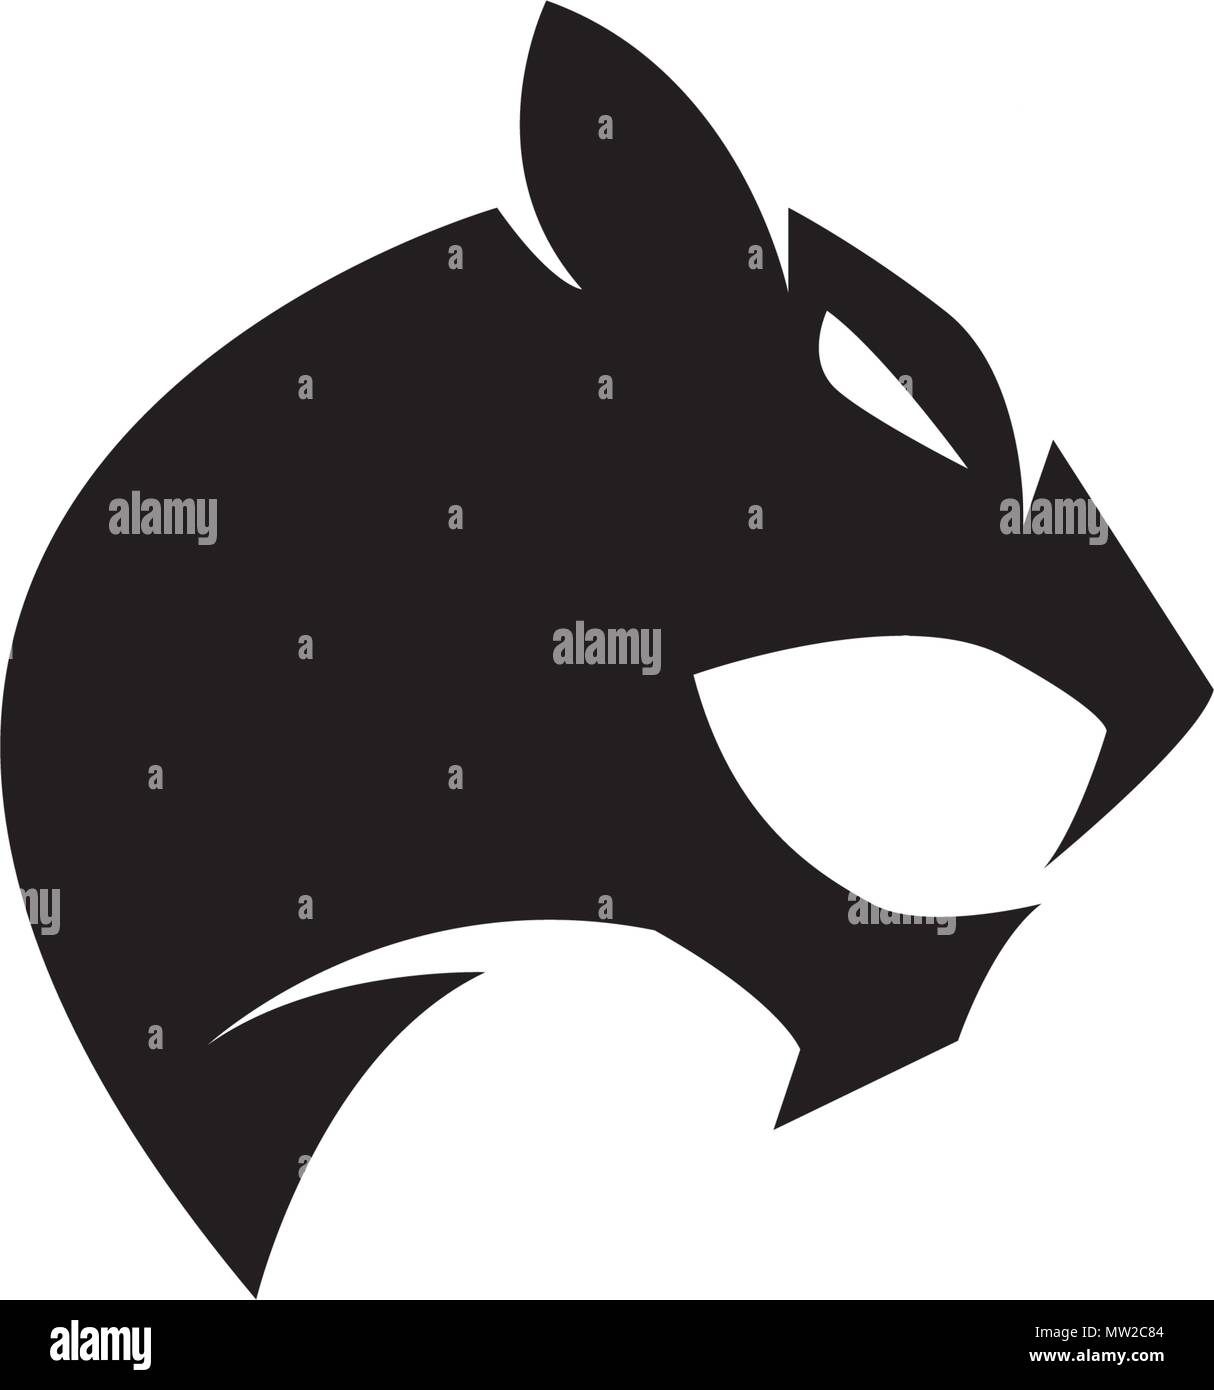 logo for puma